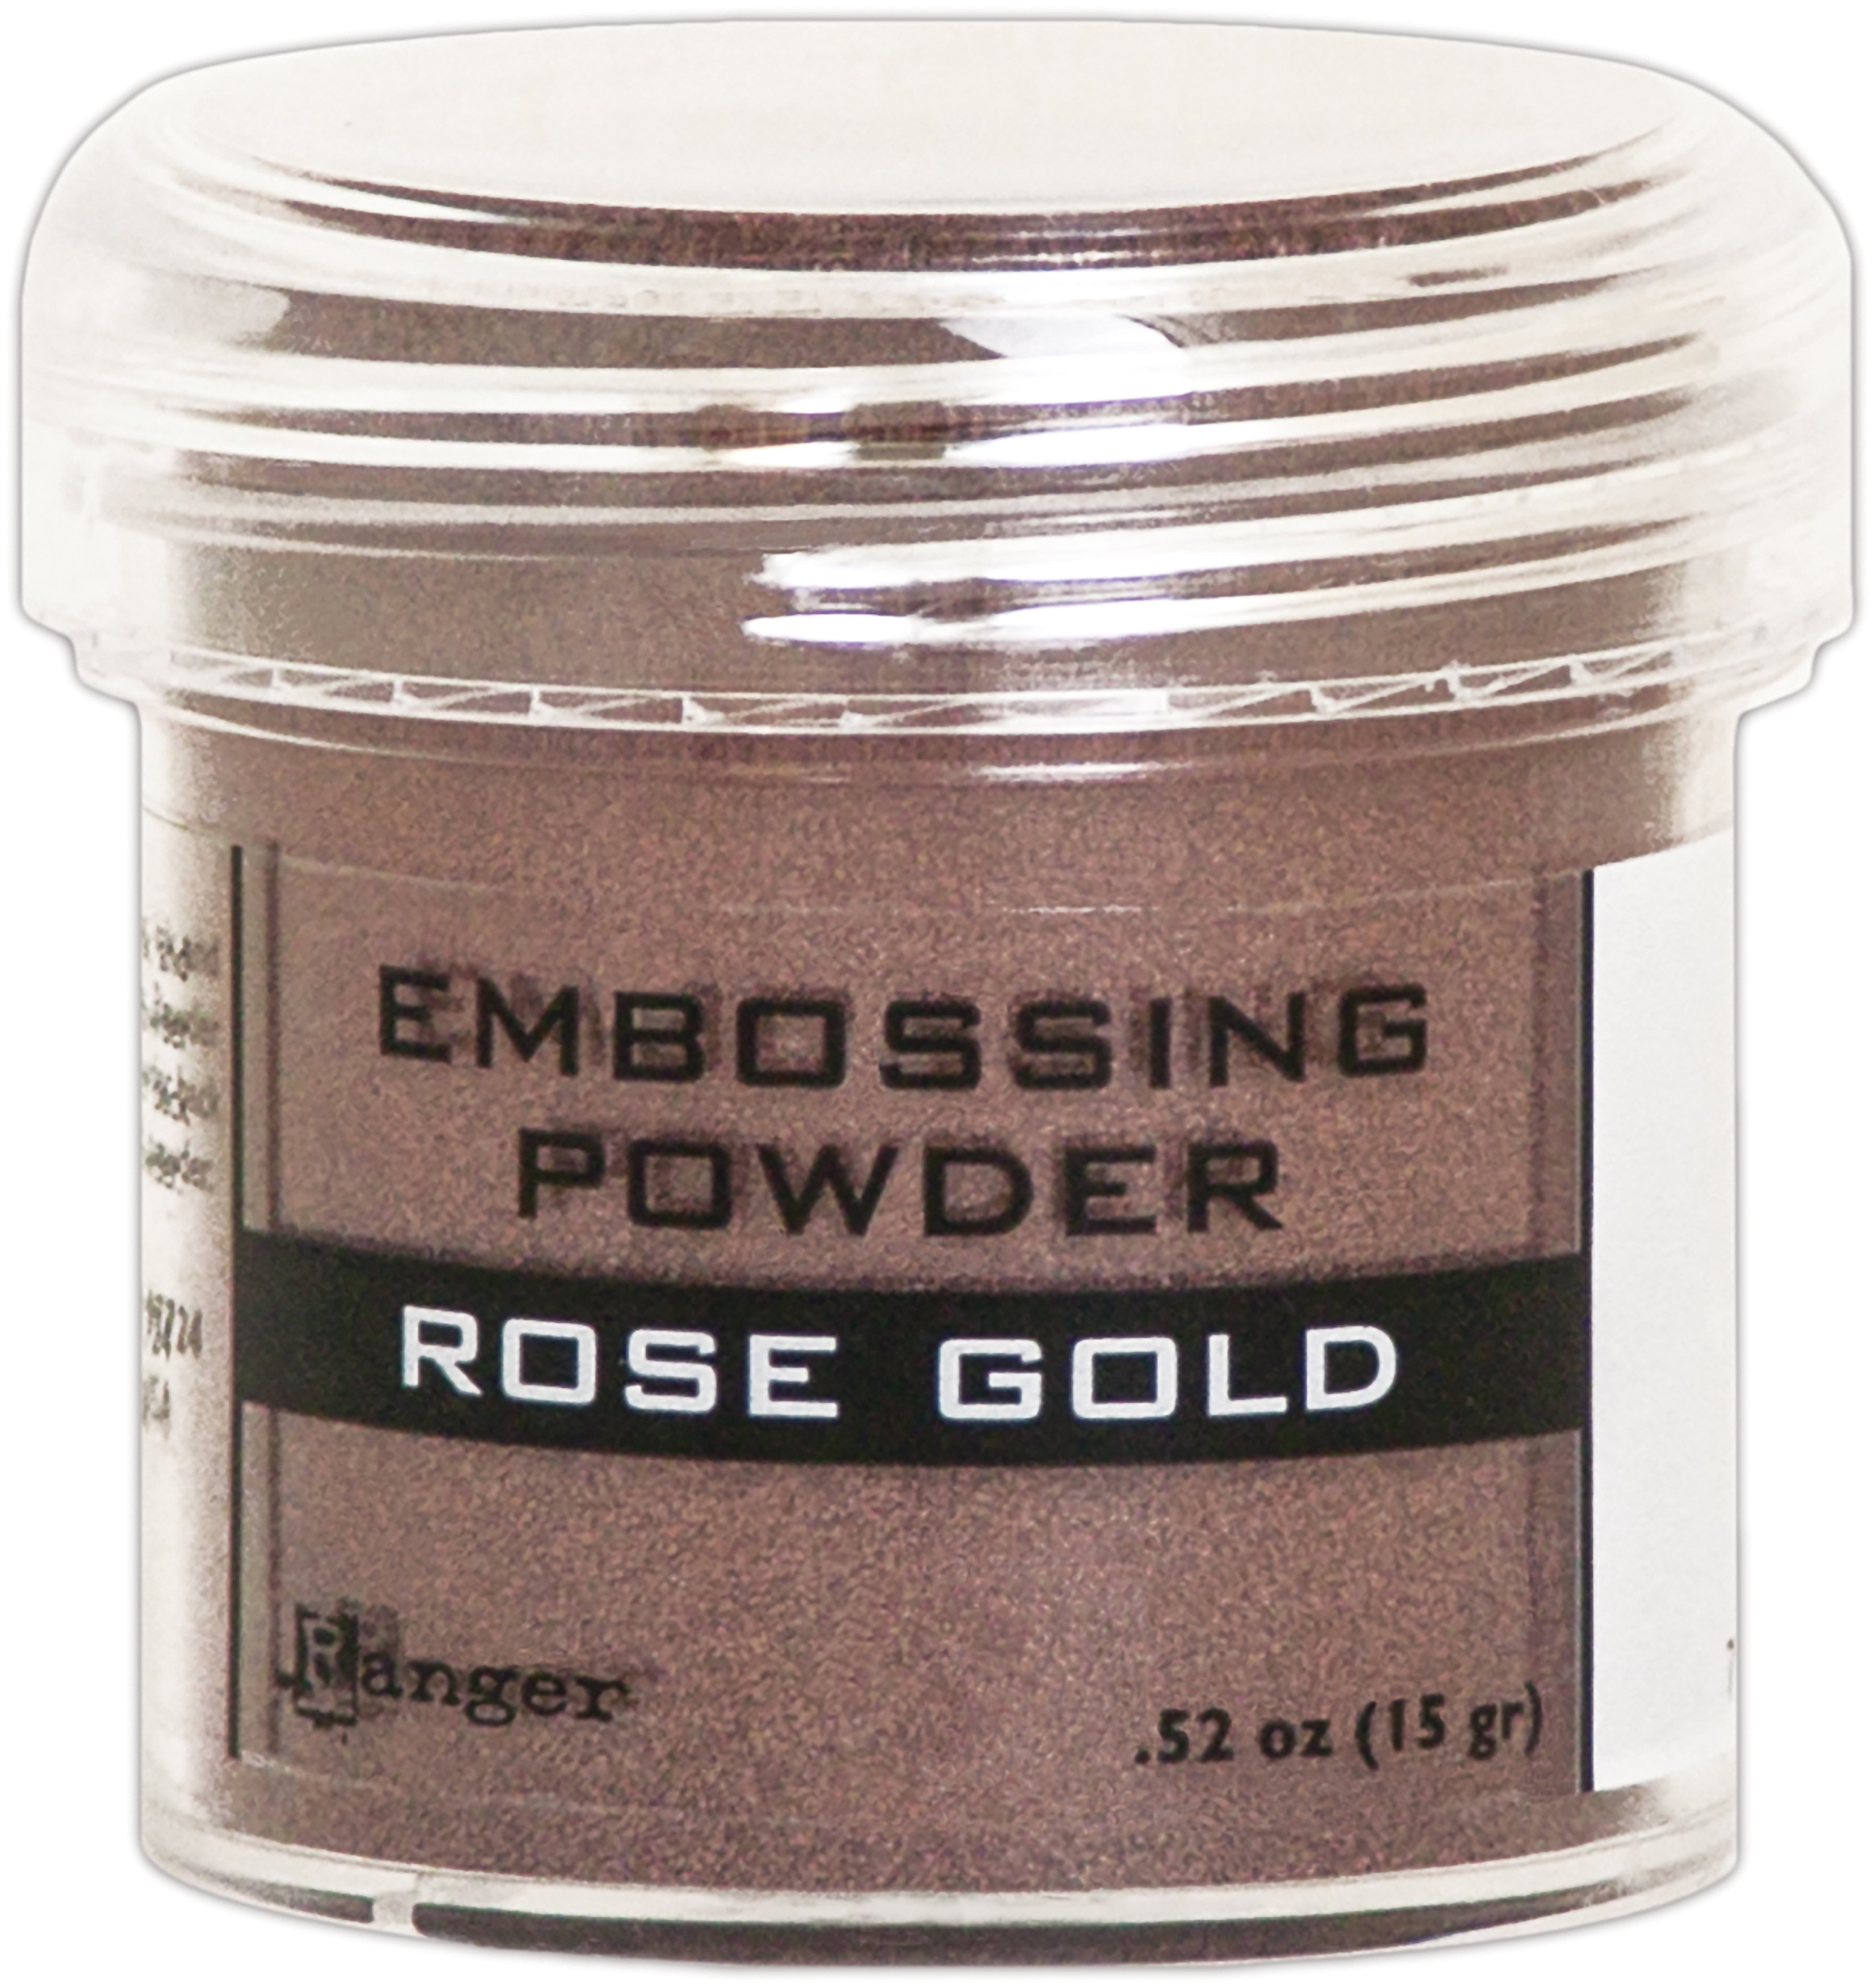 Ranger Embossing Powder-Rose Gold Metallic - Picture 1 of 1